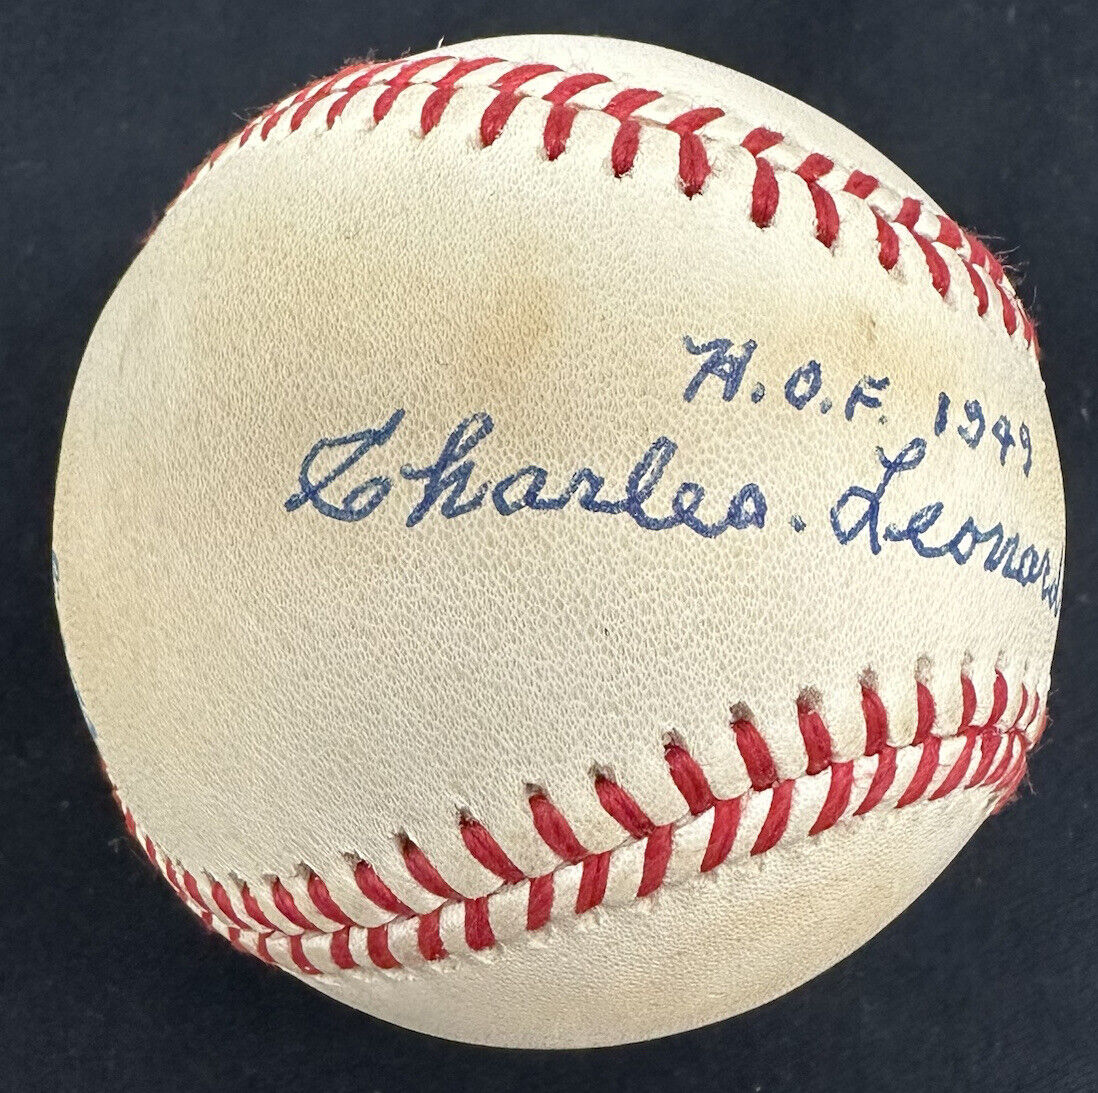 Charles Leonard Chas Gehringer HOF 1949 Full Name Signed Baseball JSA